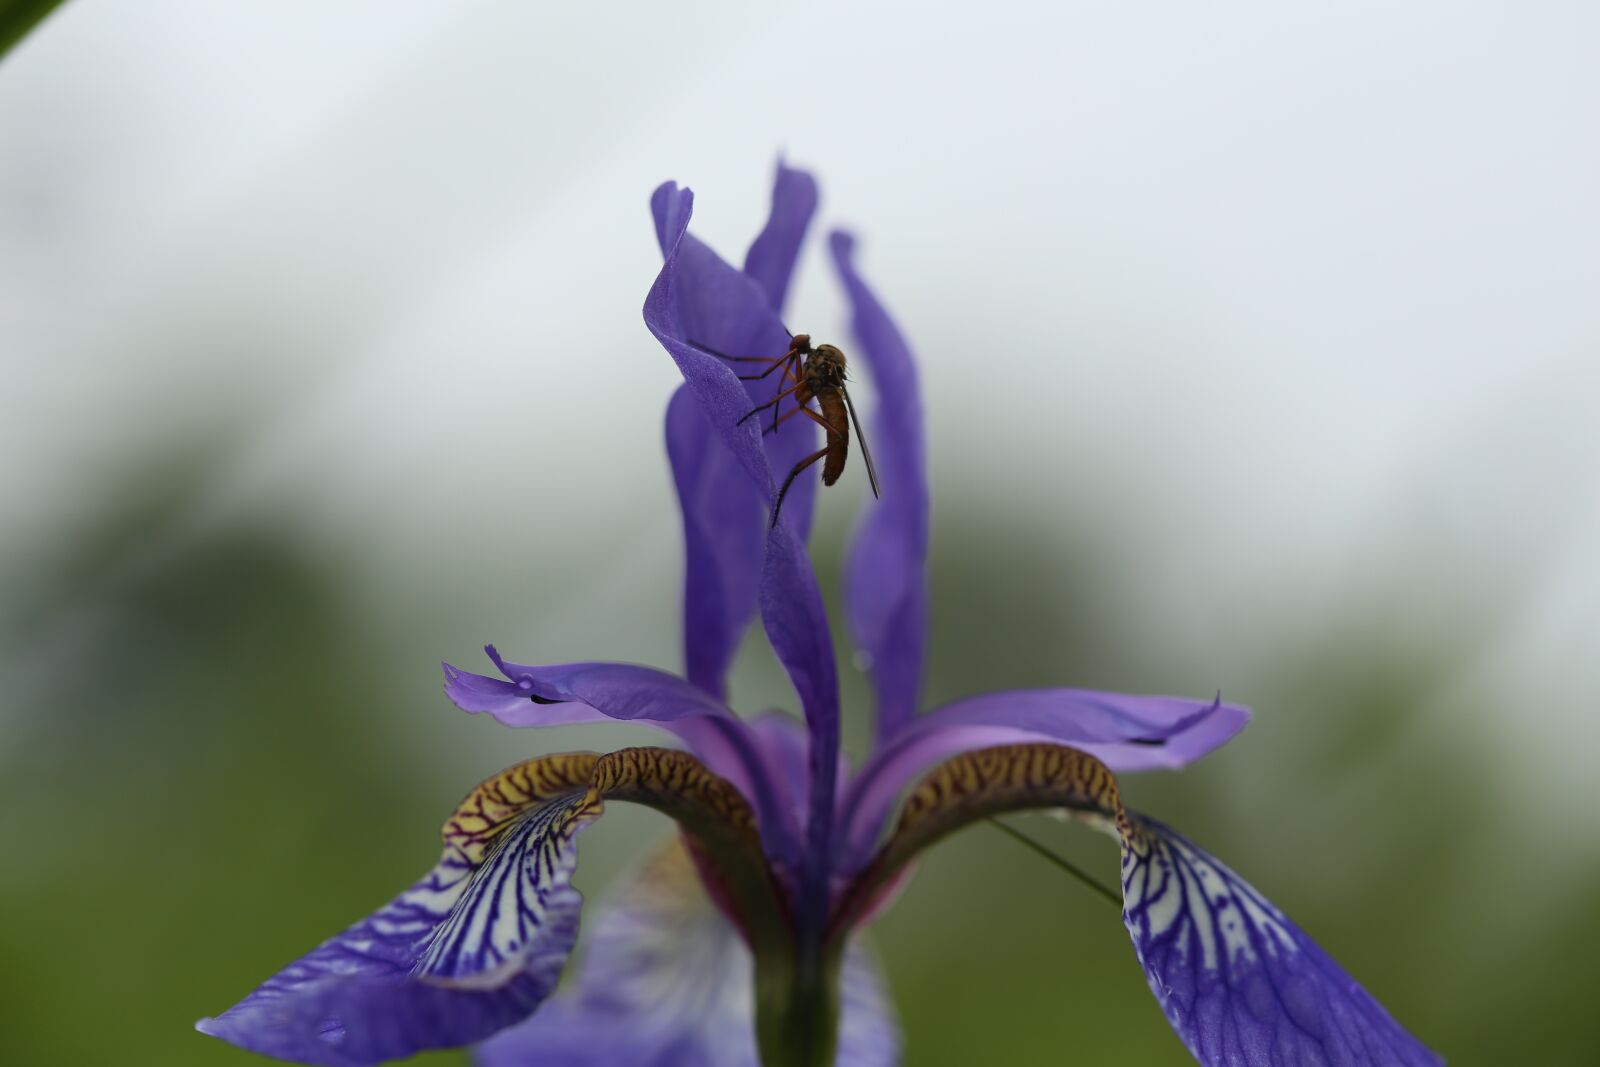 Canon EOS 6D sample photo. Flower, iris, garden photography